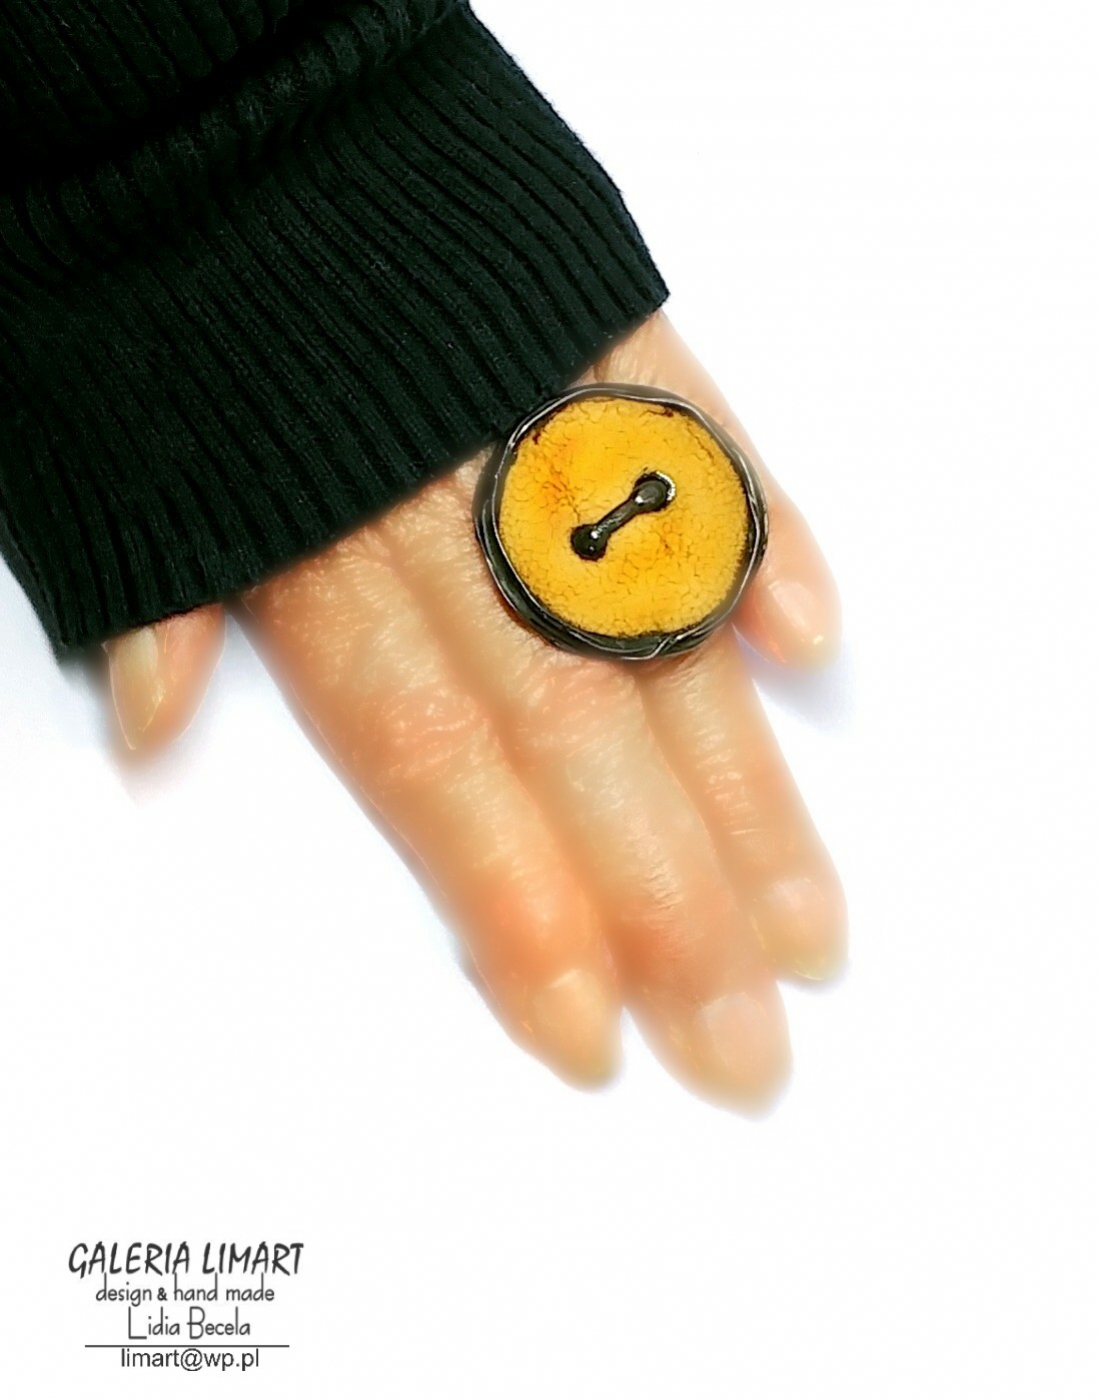 pierścień stworzony z ręcznie wypalanego ceramicznego guzika w ciepło-żółto-złotawym ubarwieniu